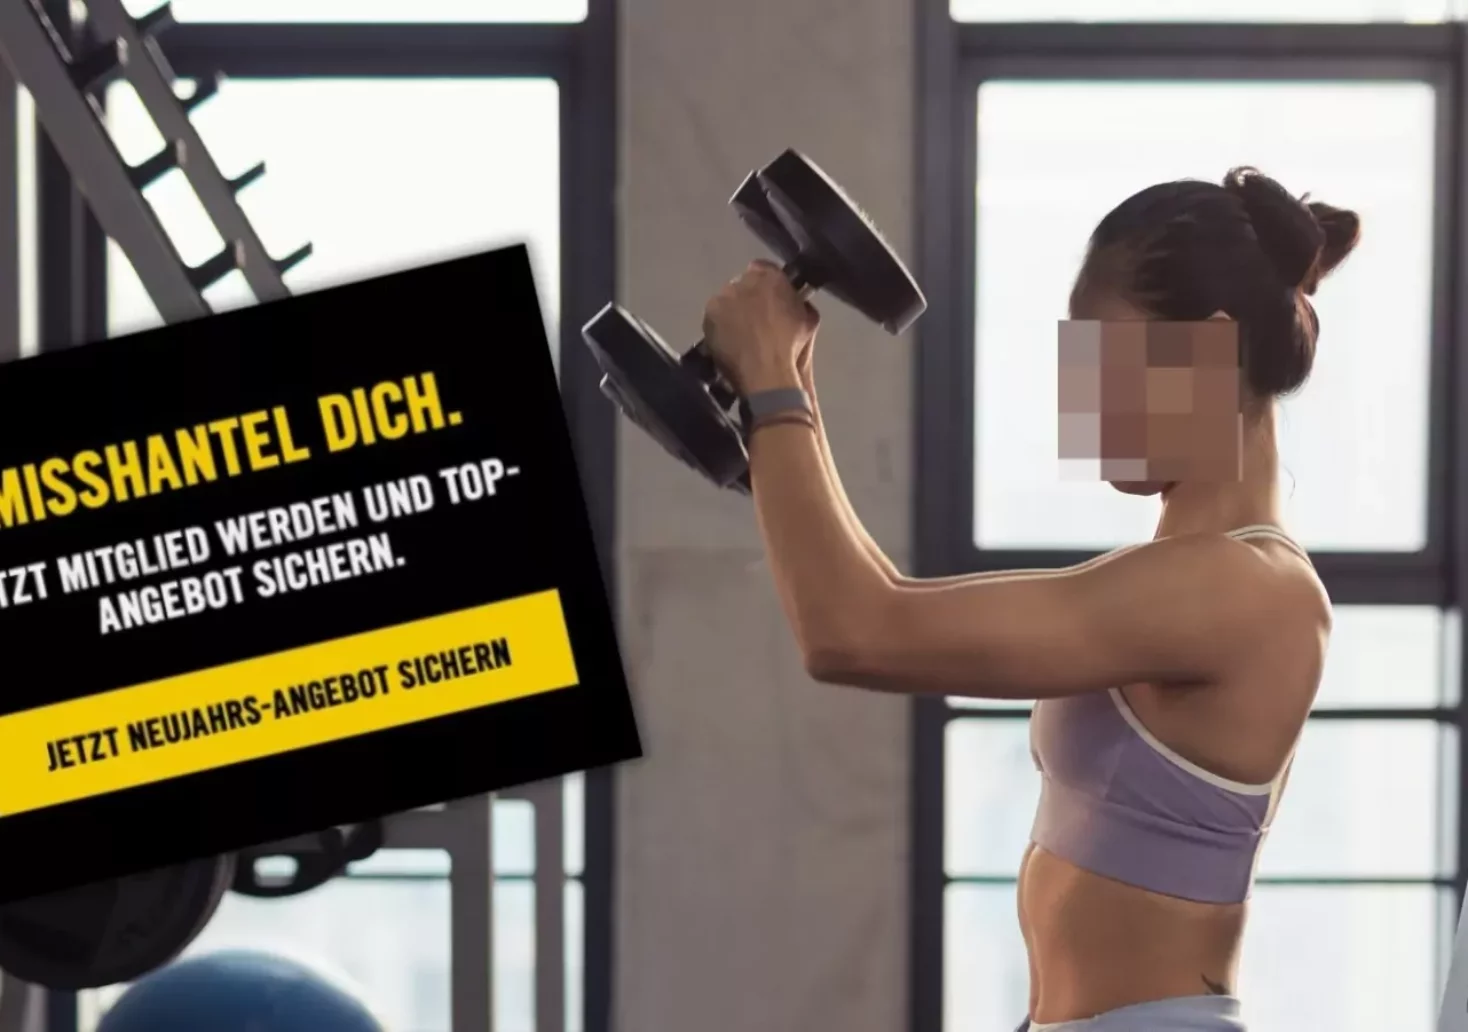 „Misshantel dich“: Fitnessstudio-Kette schockiert mit Werbung